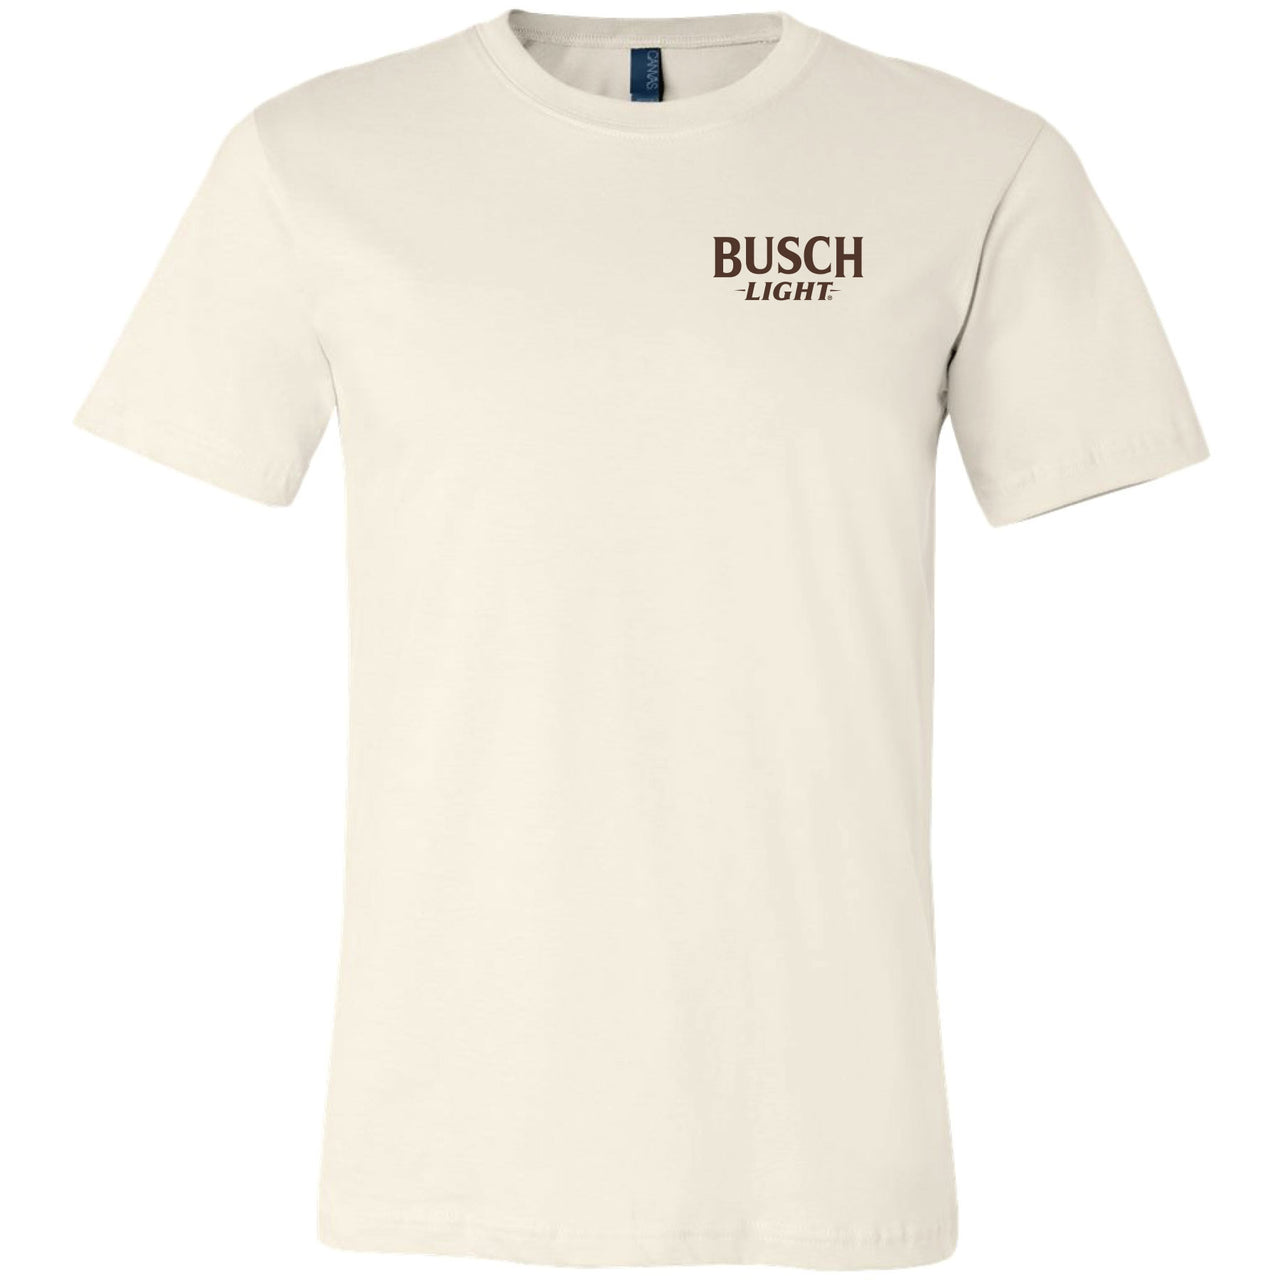 Busch Light - Camo Dog 2-sided T-shirt